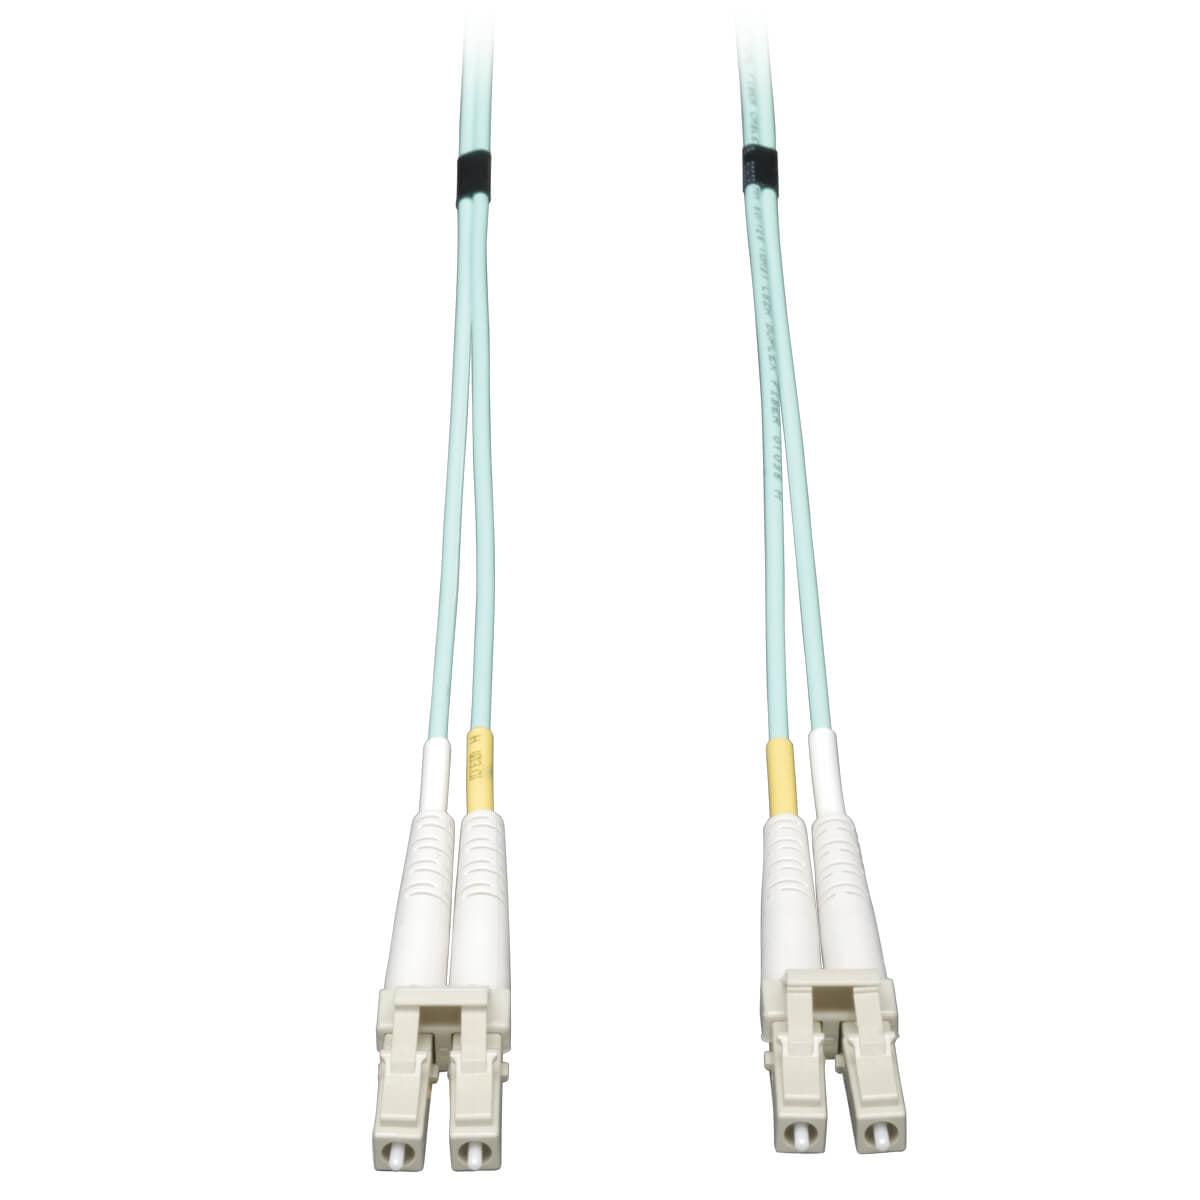 Tripp Lite N820-30M 10Gb Duplex Multimode 50/125 Om3 Lszh Fiber Patch Cable, (Lc/Lc) - Aqua, 30M (100 Ft.)